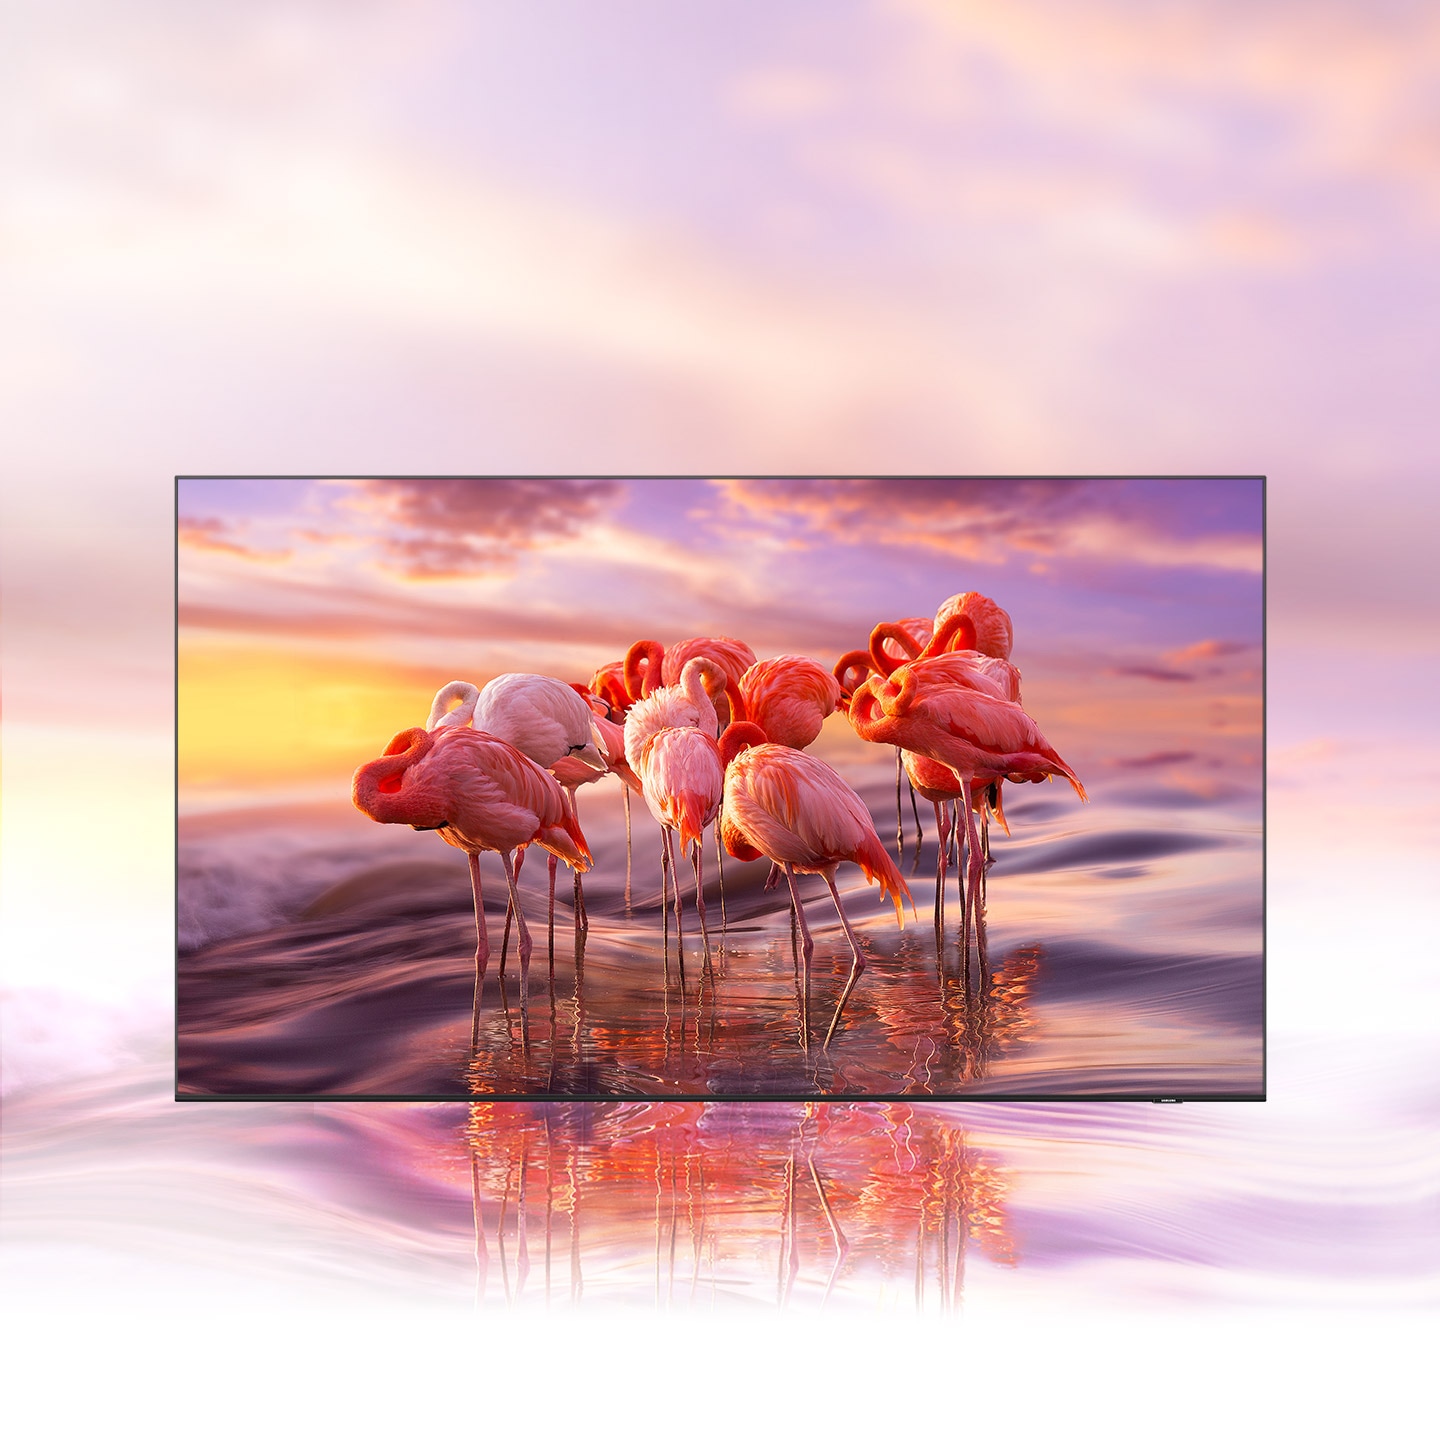 TV QLED hiển thị hình ảnh hồng hạc có màu sắc phức tạp để thể hiện khả năng tạo bóng màu rực rỡ của công nghệ Quantum Dot